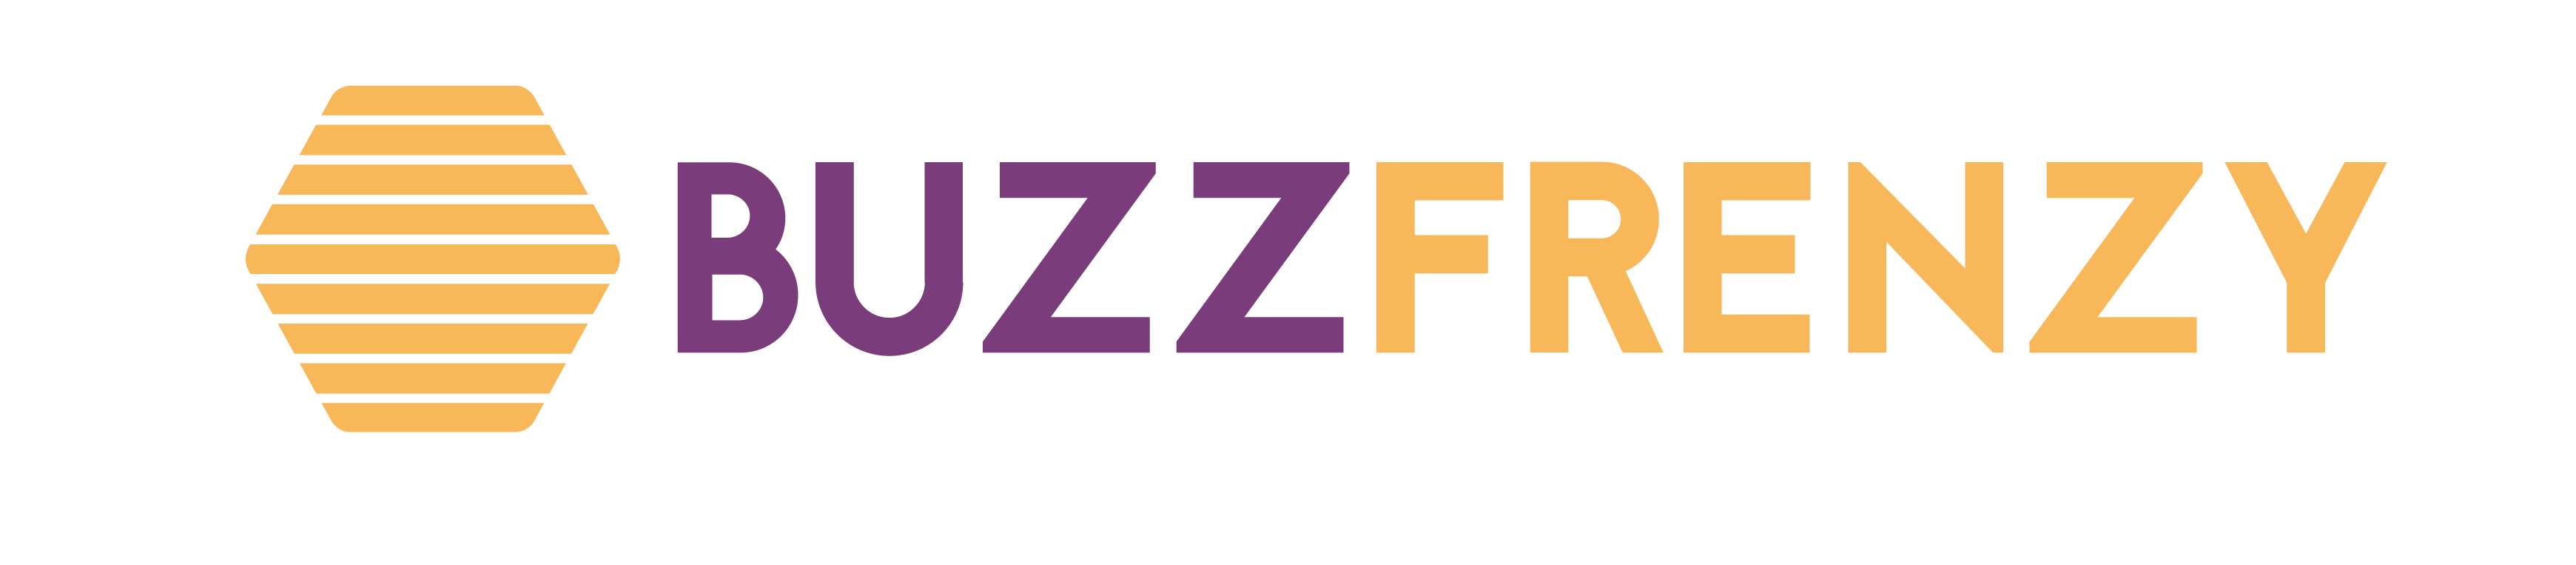 BuzzFrenzyLogo-04